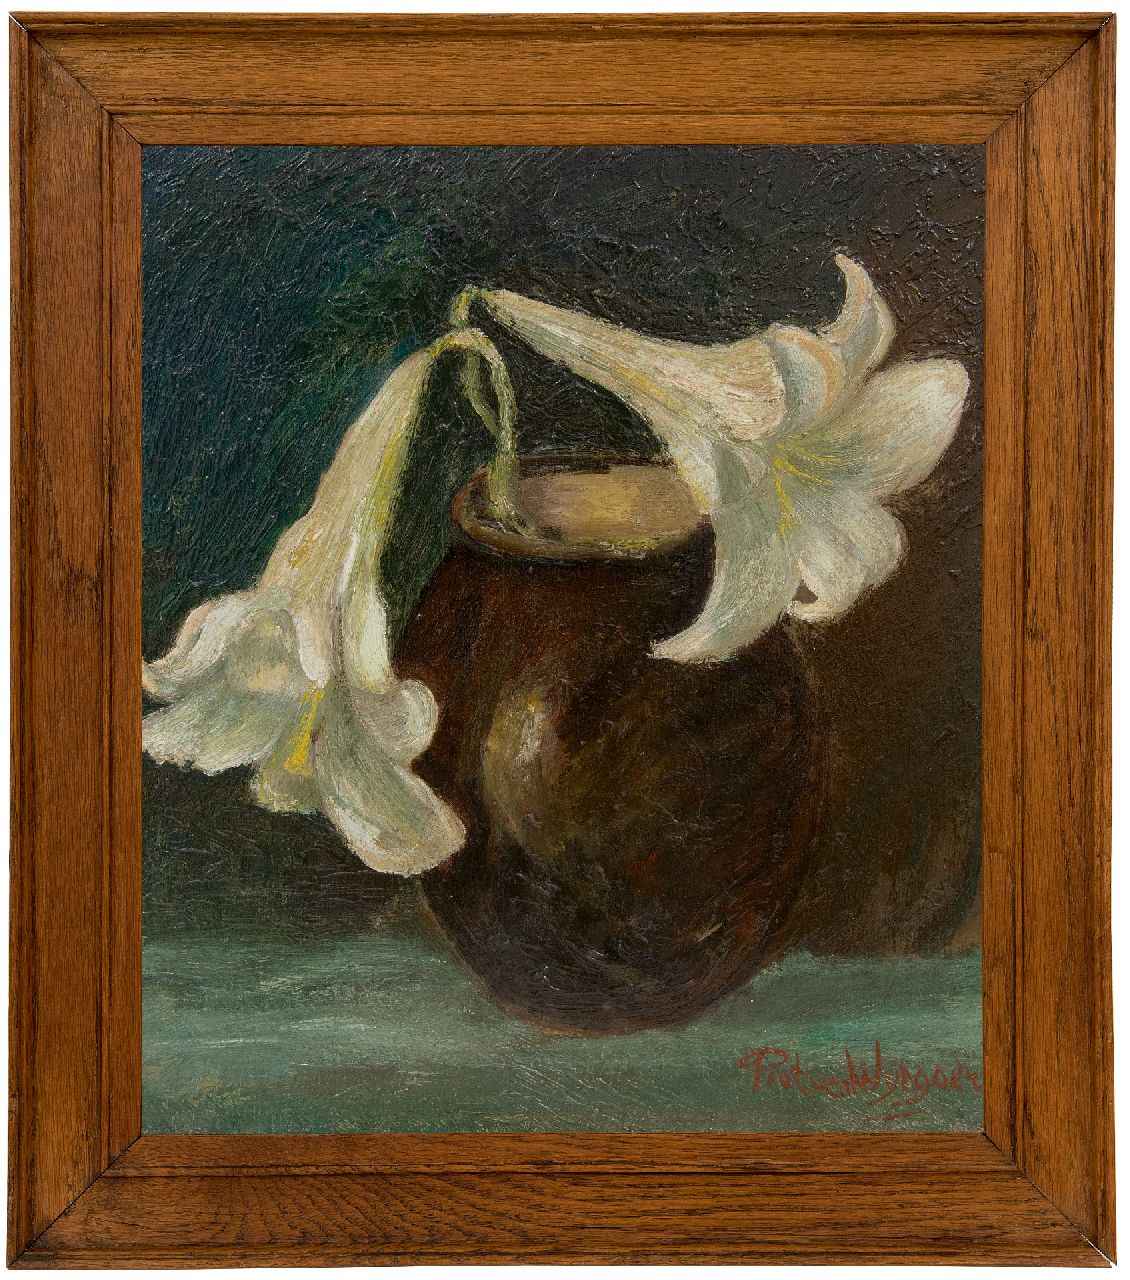 Wijngaerdt P.T. van | Petrus Theodorus 'Piet' van Wijngaerdt | Schilderijen te koop aangeboden | Lelietak in een vaas, olieverf op paneel 35,1 x 32,4 cm, gesigneerd rechtsonder